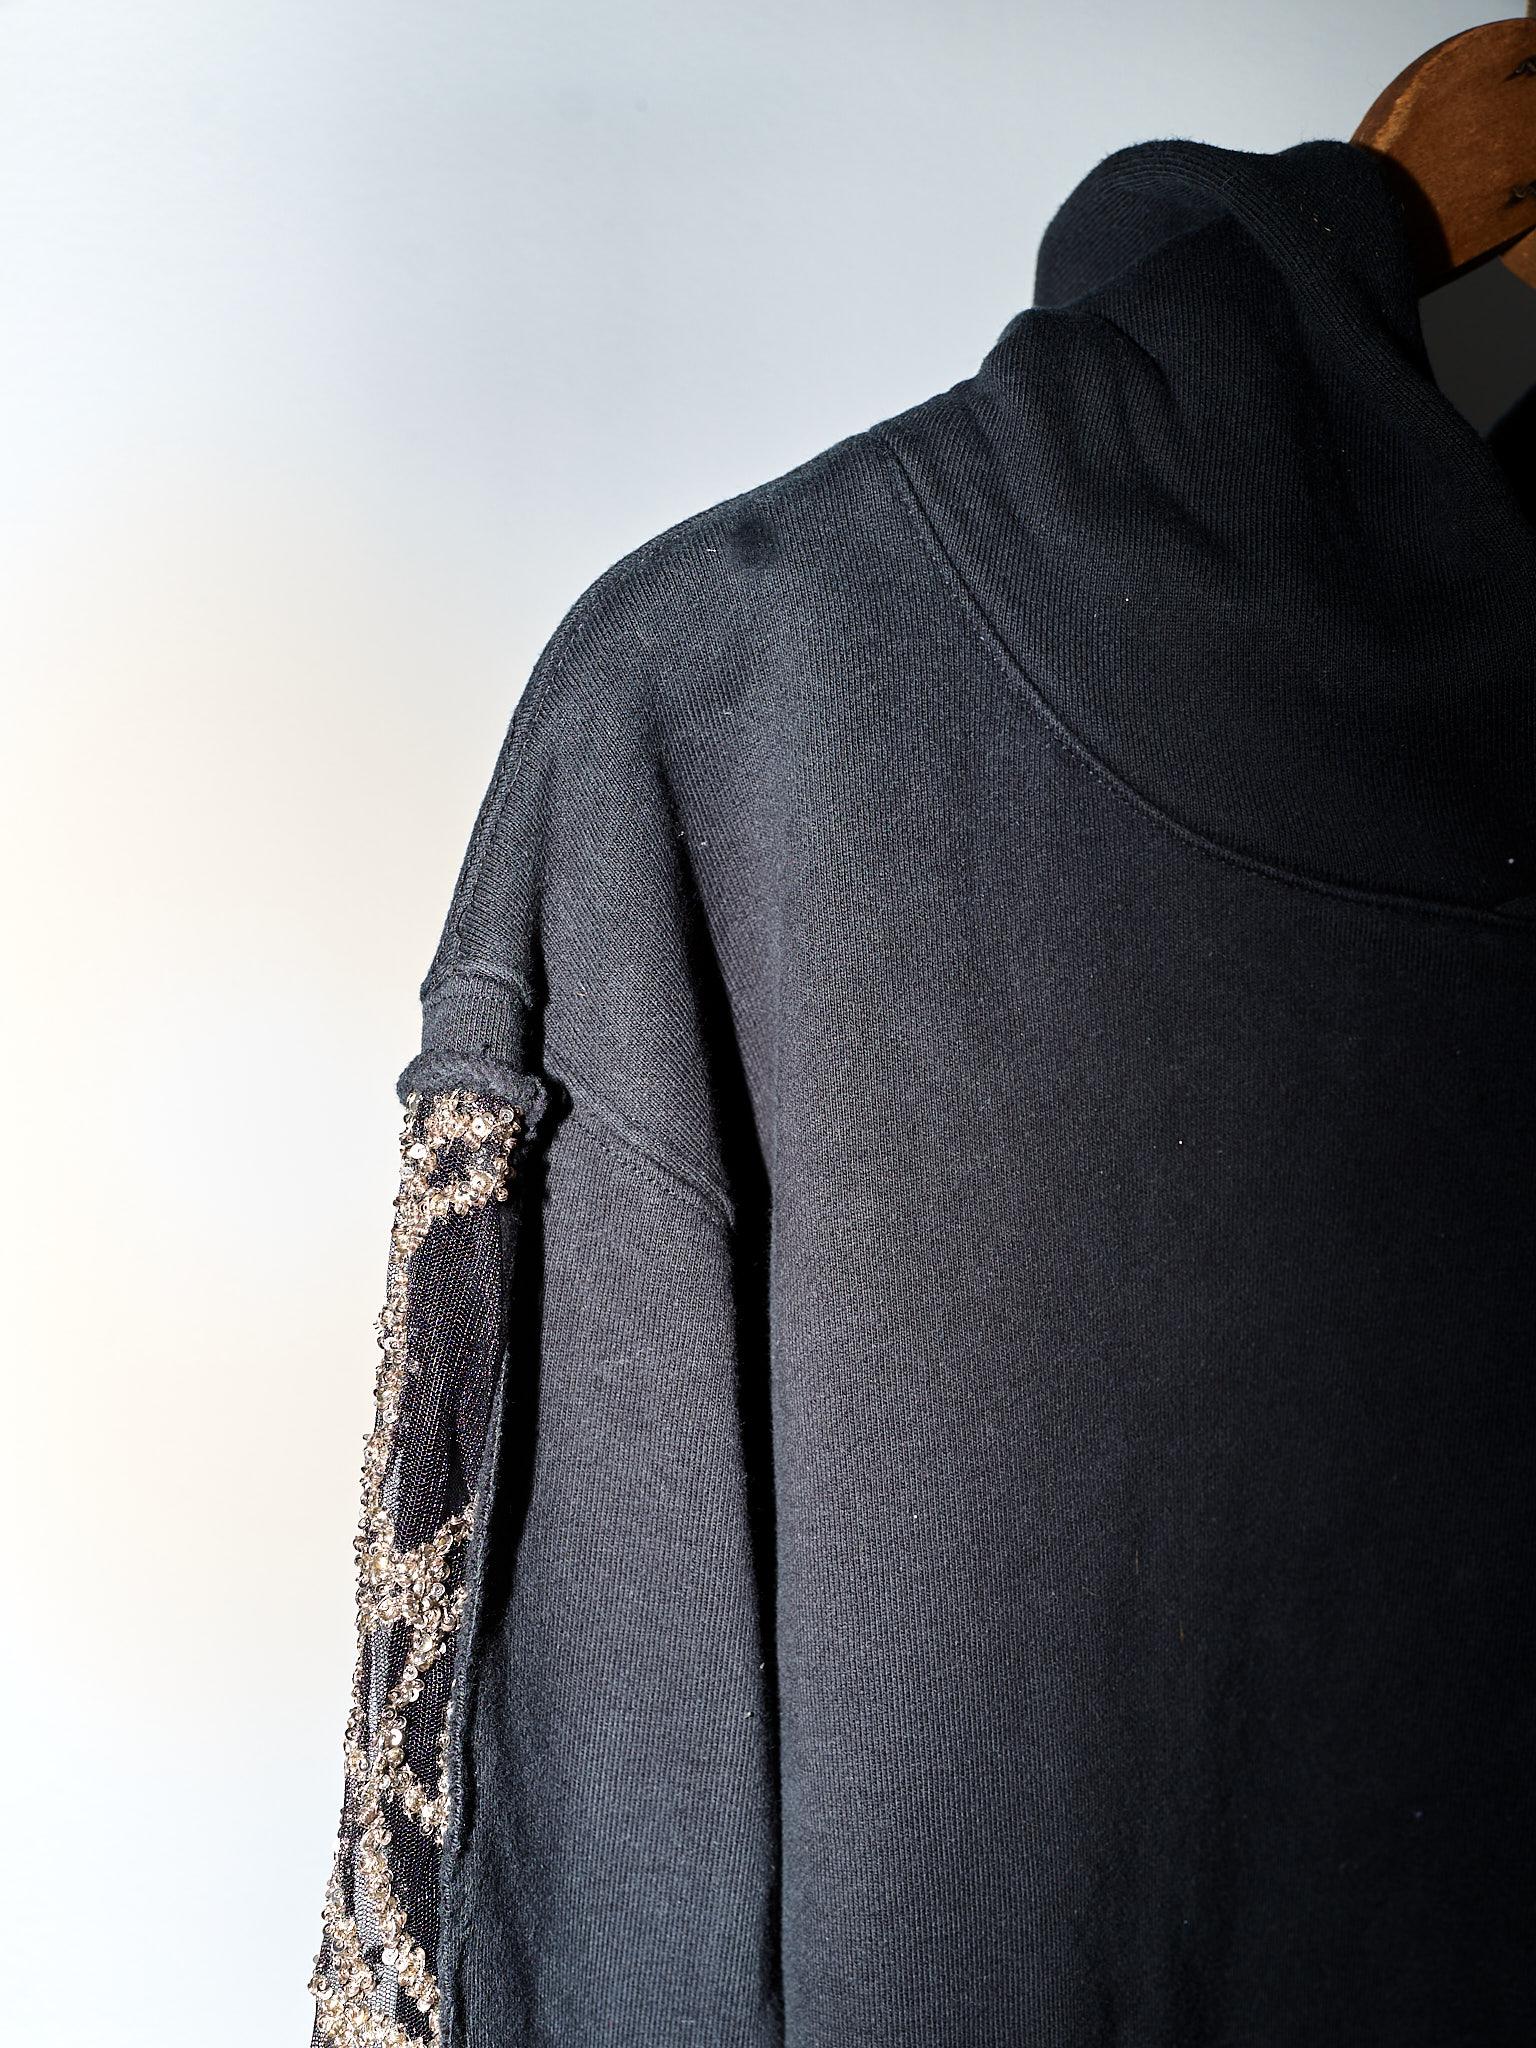 Black Hoodie Sweatshirt Transparent Sheer Mesh Chrystal Embroidery J Dauphin 3